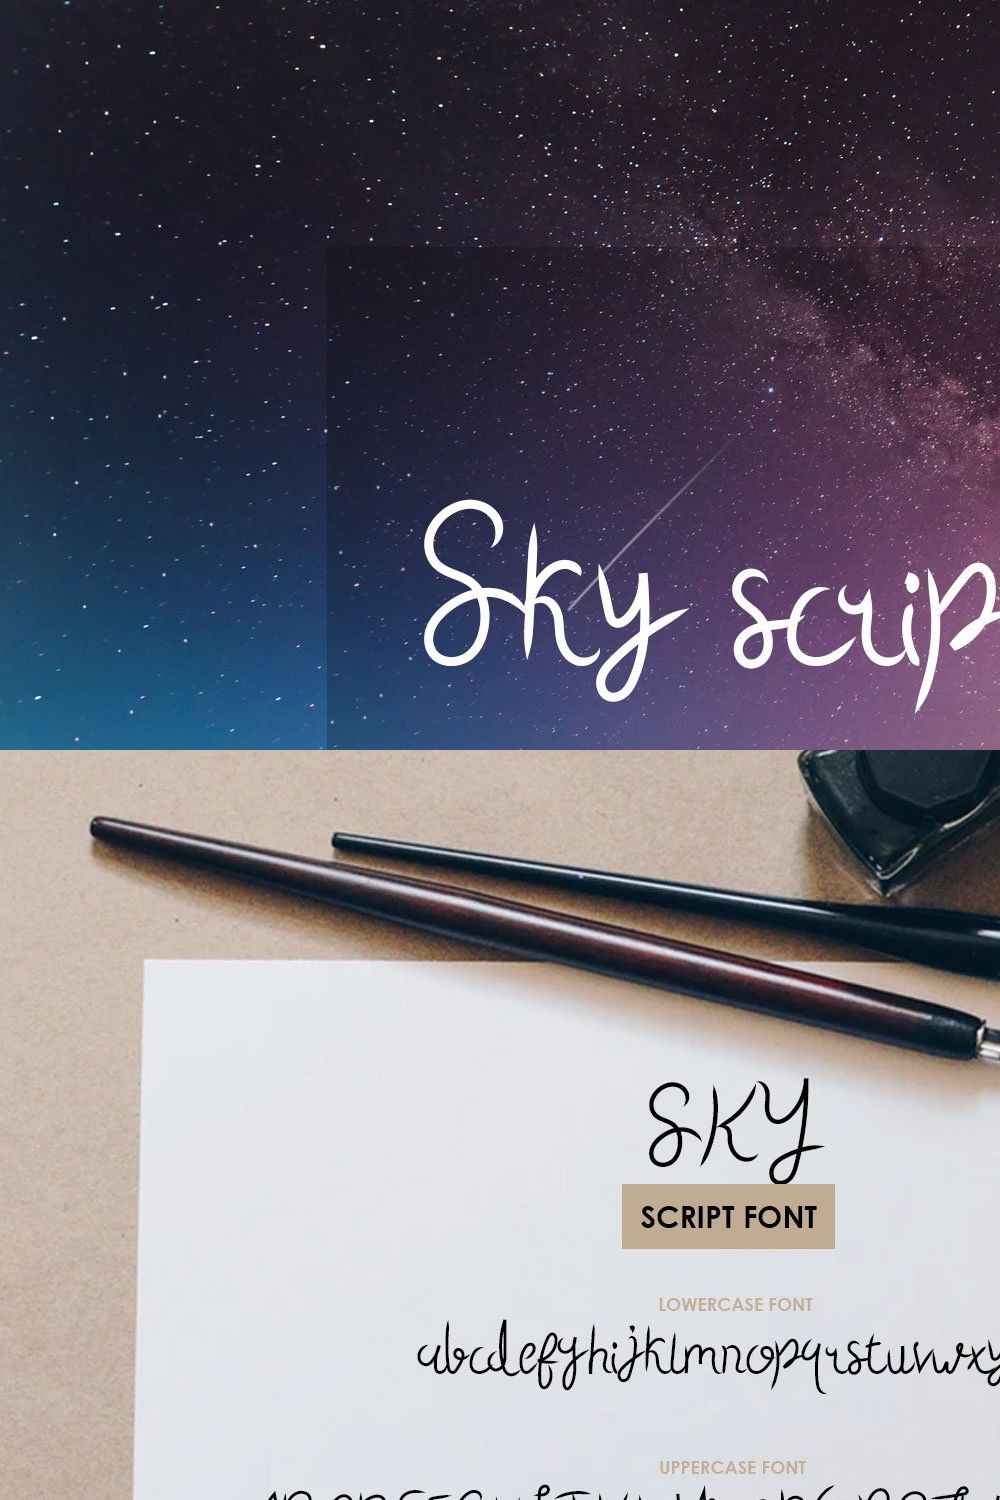 Sky Script Font pinterest preview image.